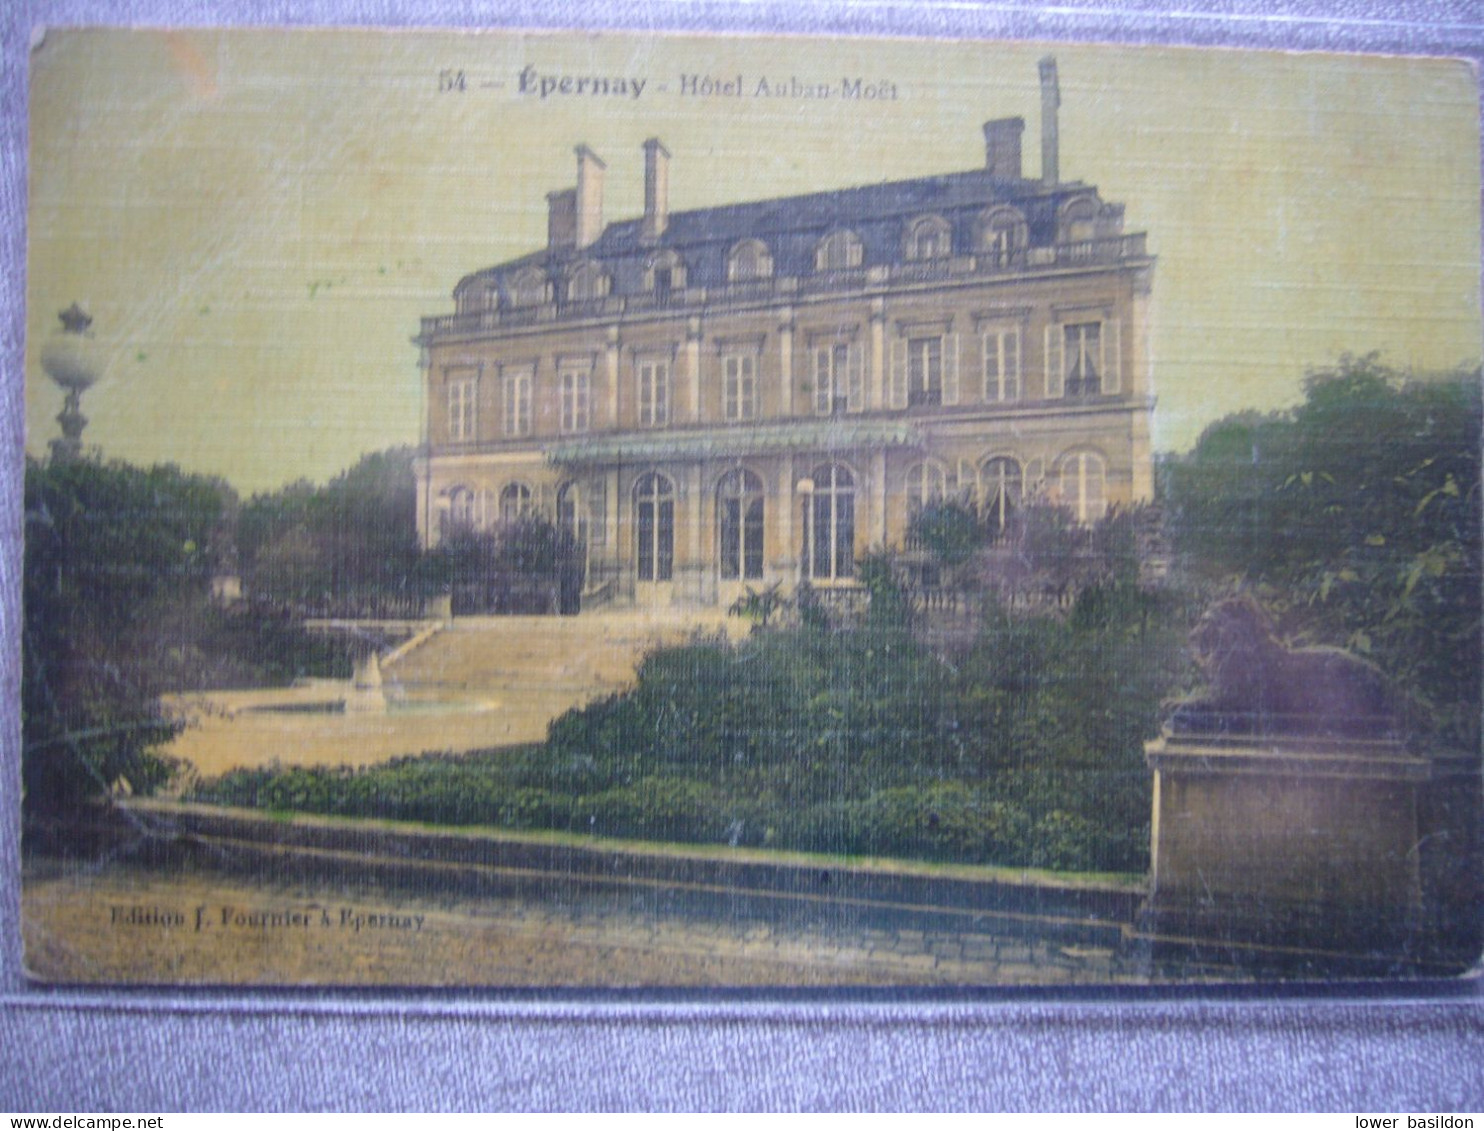 Hôtel Auban-Moet - Epernay